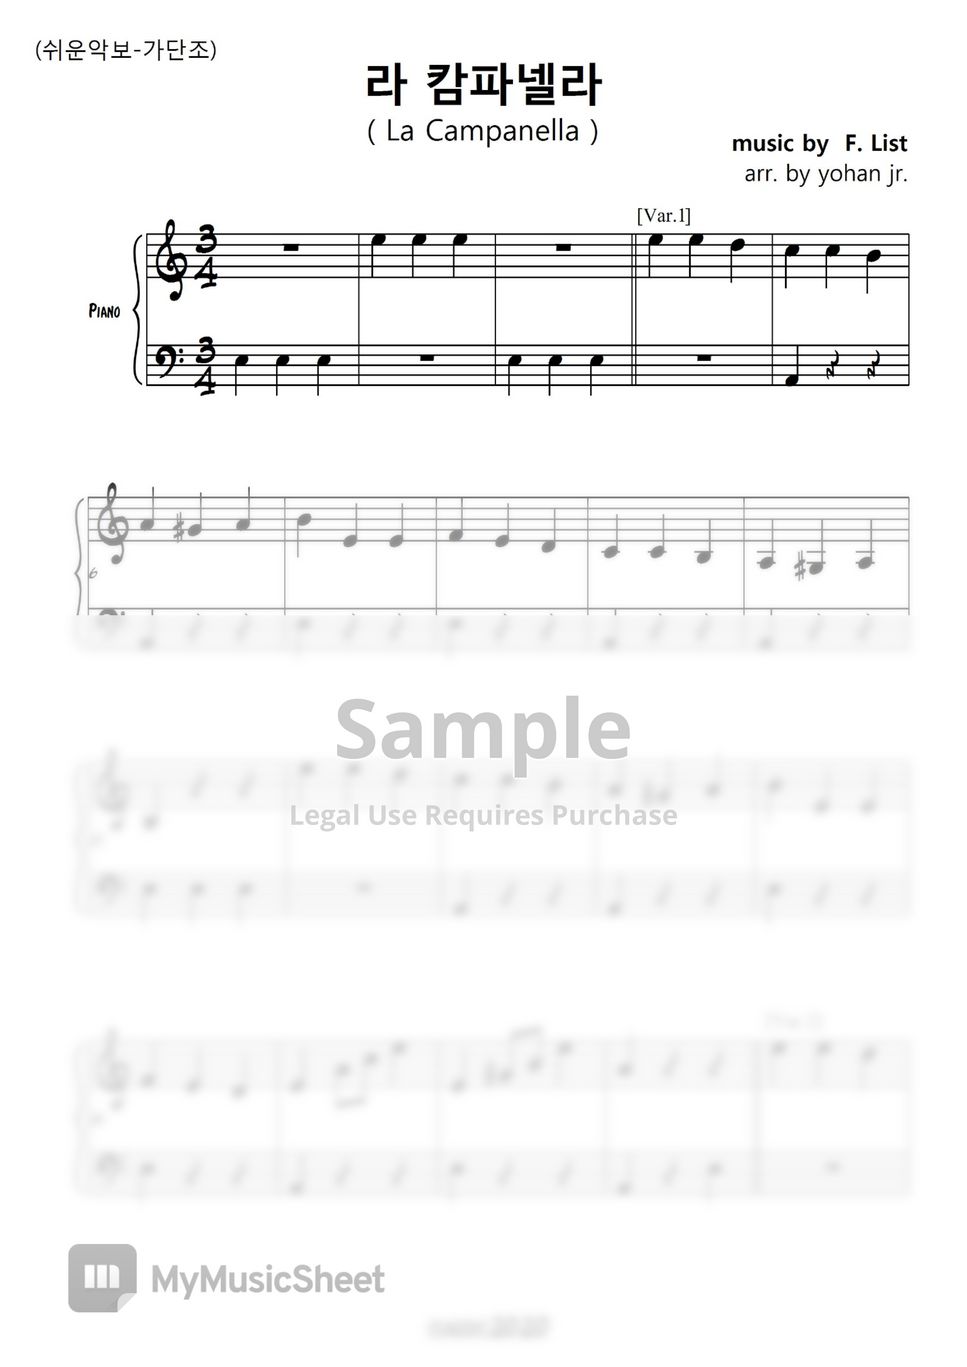 F. List - La Campanella (easy piano in A) by classic2020